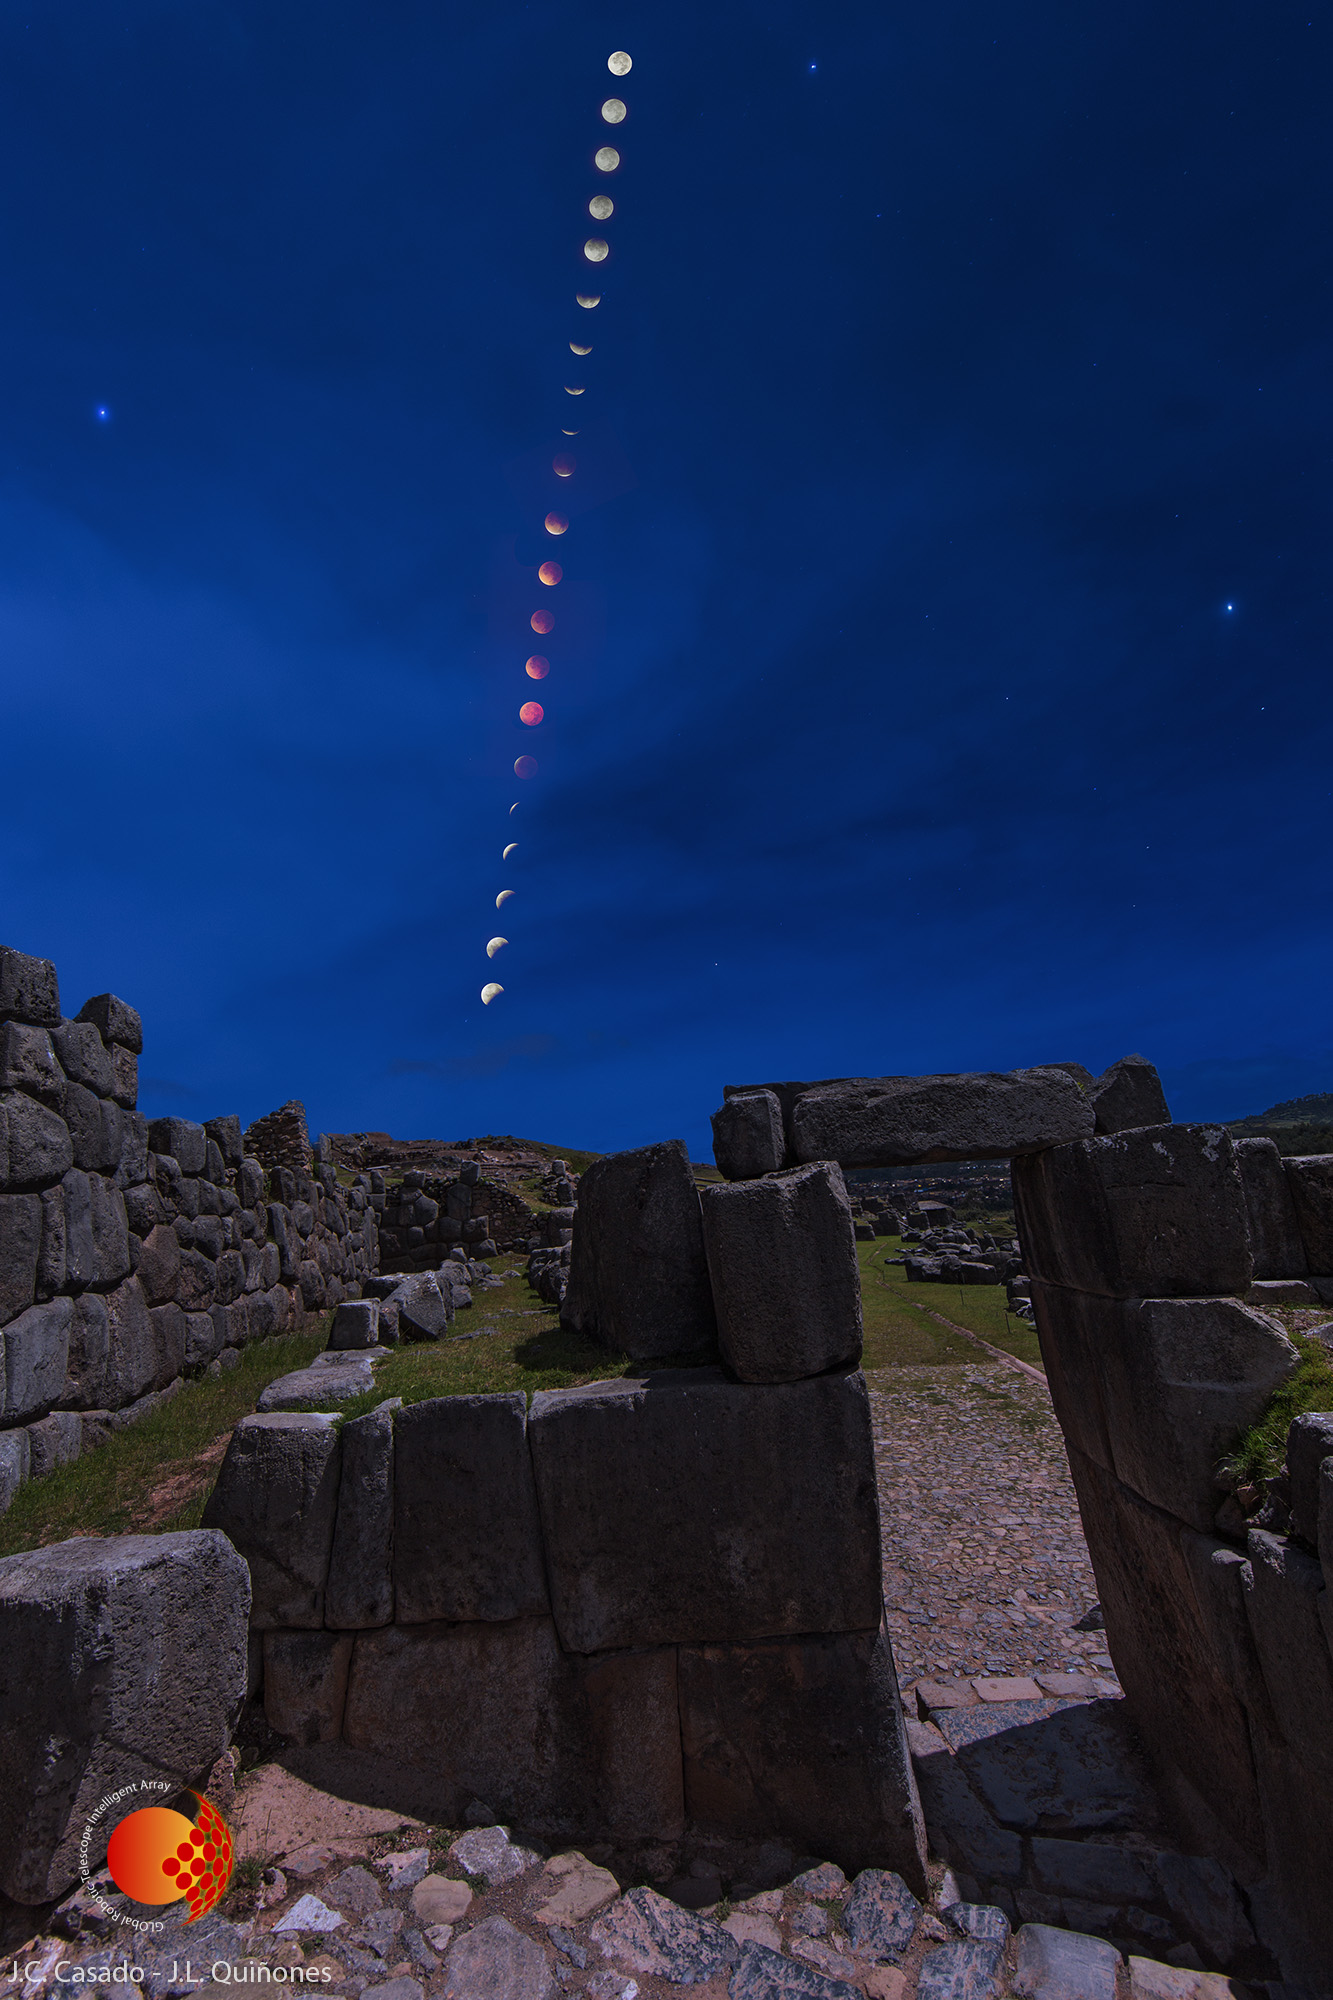 NightScape Photography in Moon Eclipse in Saqsaywaman, e-eye, Entre Encinas y Estrellas. Jose Luis Quiñones